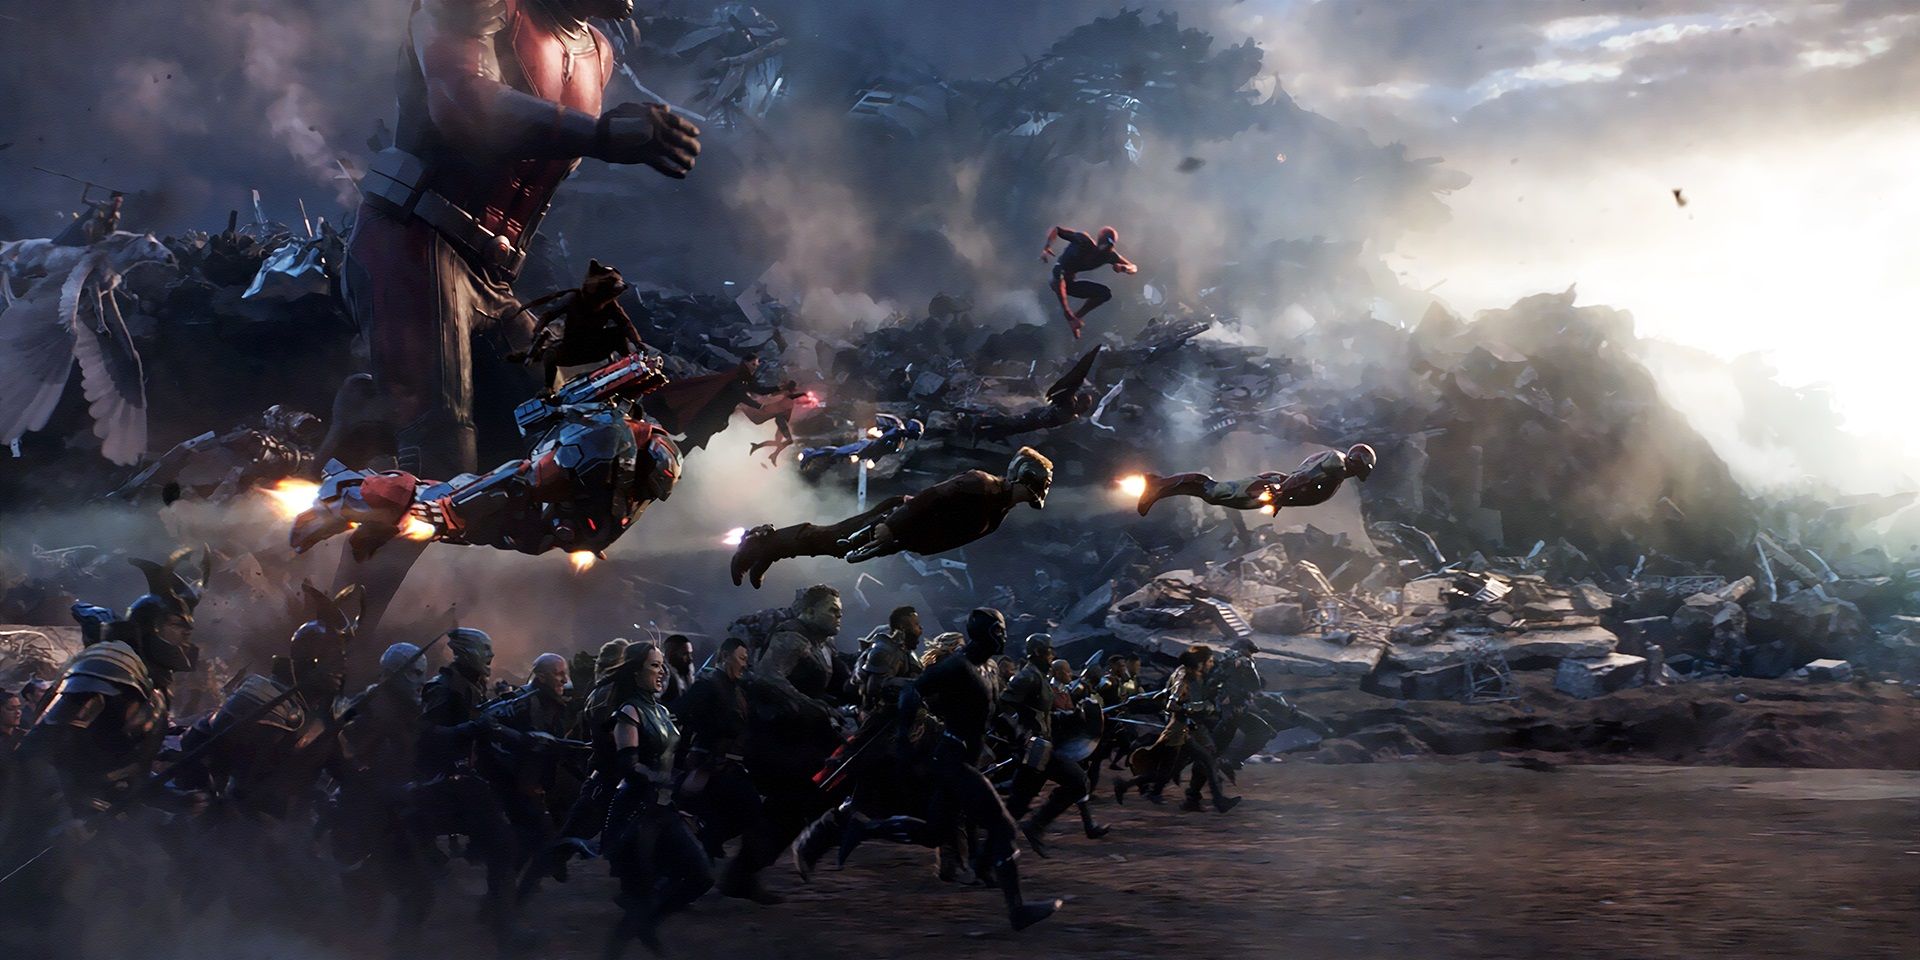 The Avengers assemble in Endgame